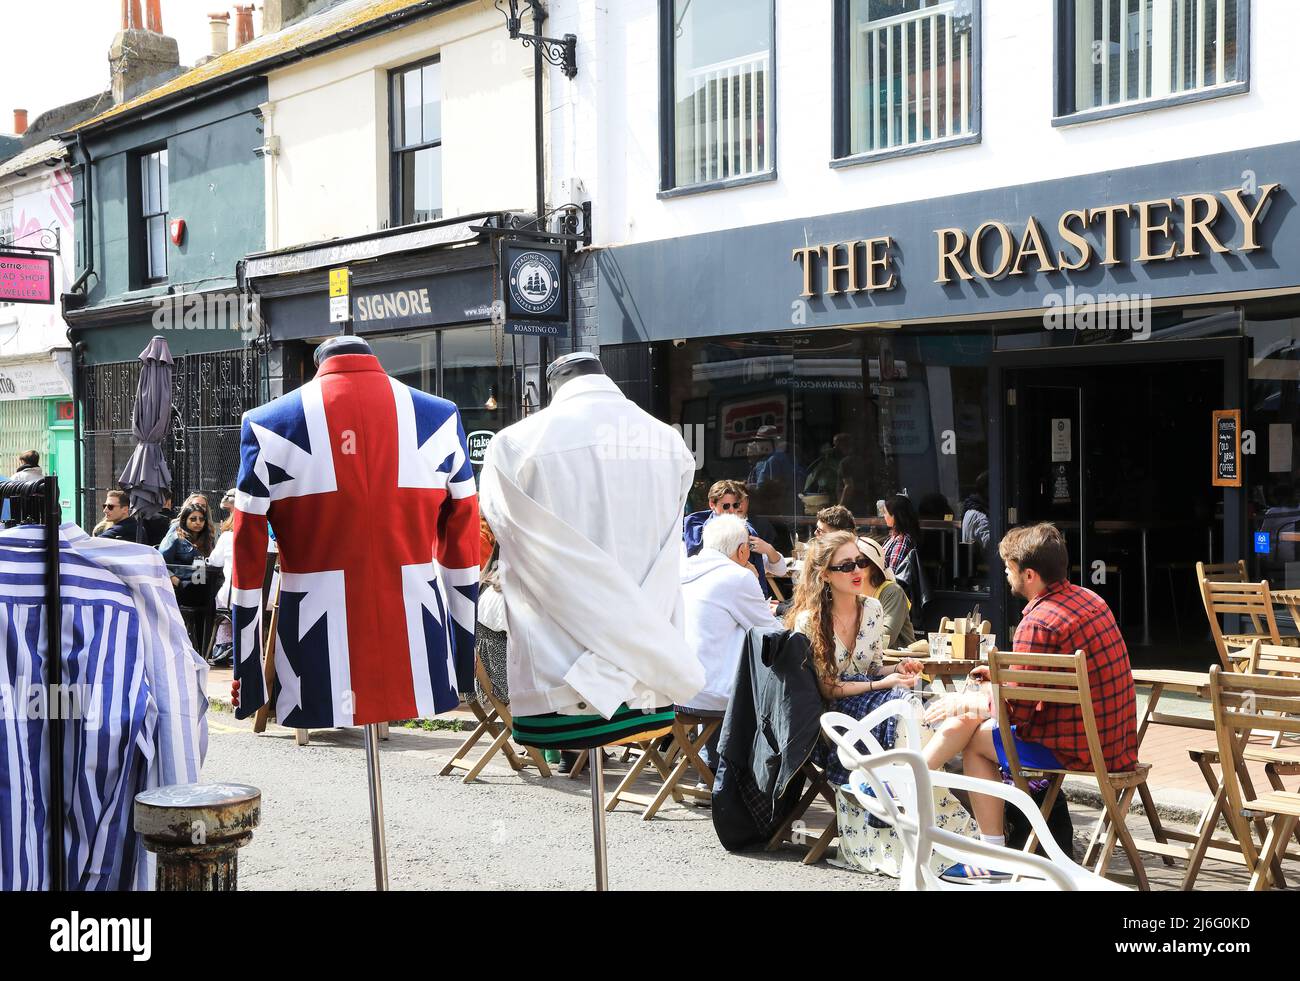 Soleil printanier sur le nord de Laine à Brighton, un quartier populaire avec une ambiance bohème, plein de boutiques et d'étals indépendants, à East Sussex, Royaume-Uni Banque D'Images